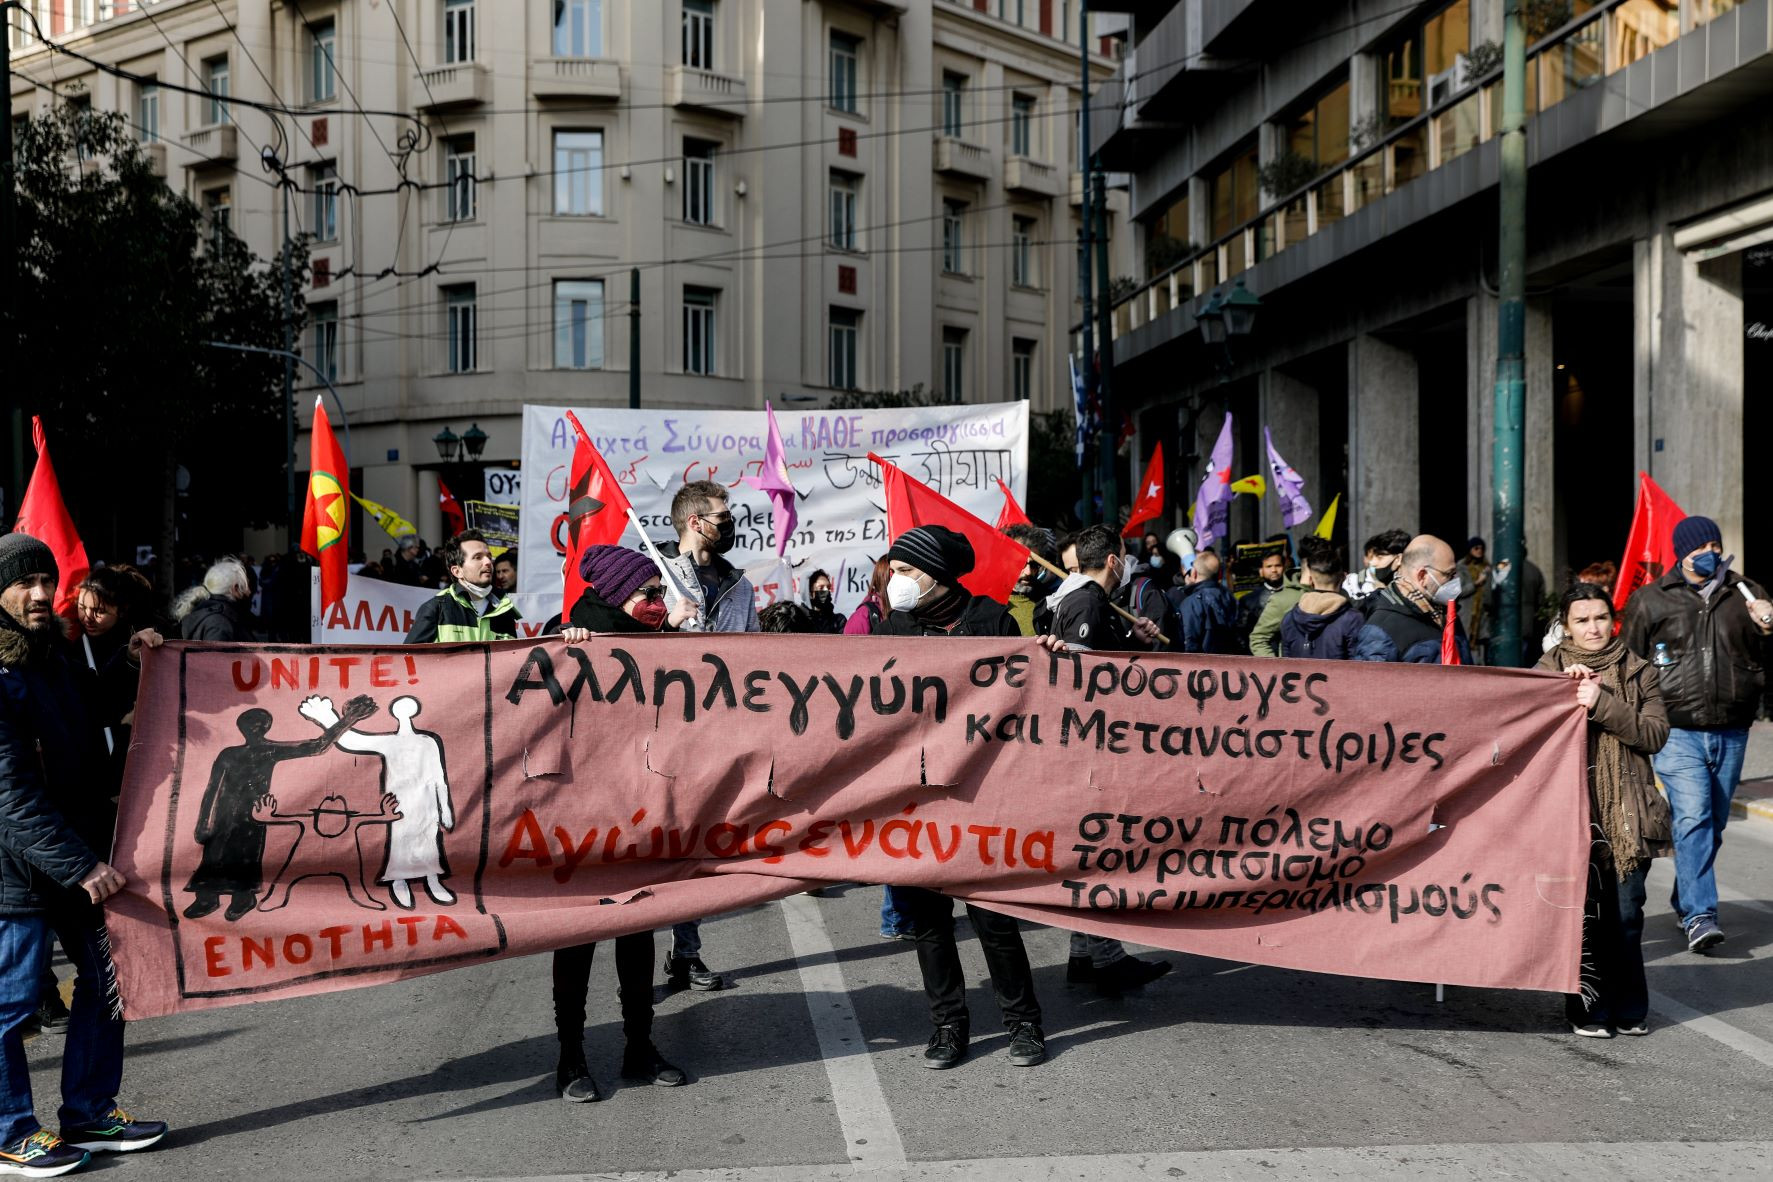 Αντιπολεμικό – αντιρατσιστικό συλλαλητήριο στο κέντρο της Αθήνας